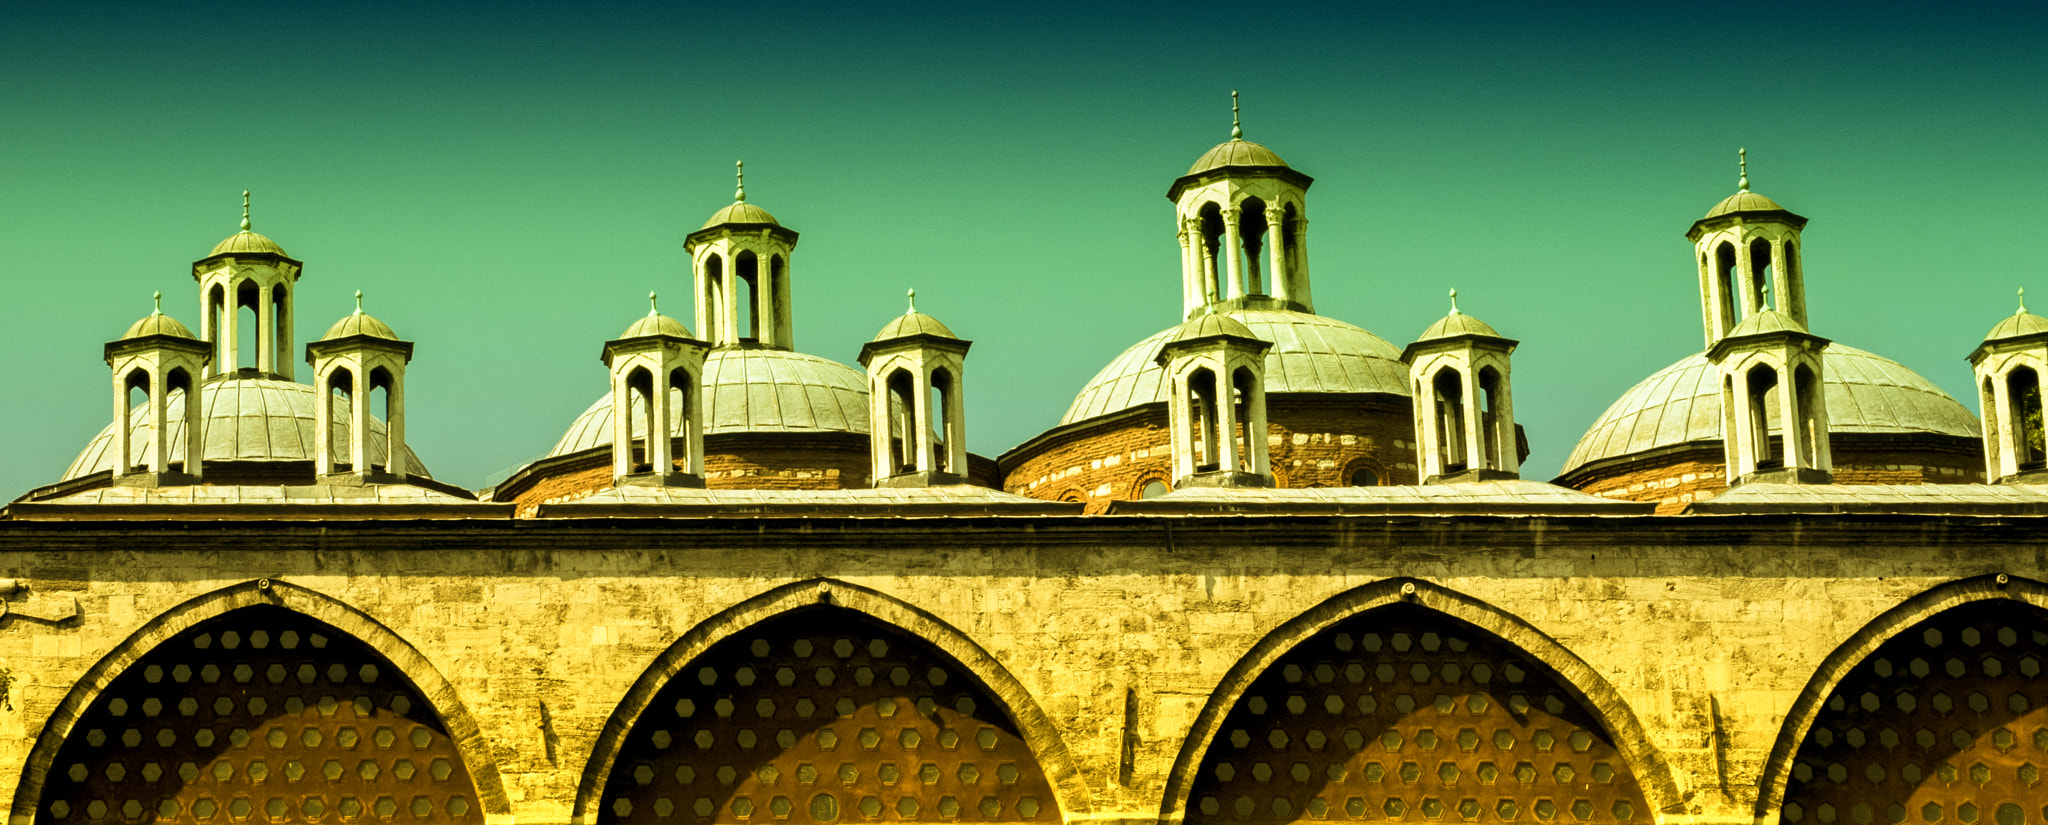 domes of an ottoman arsenal